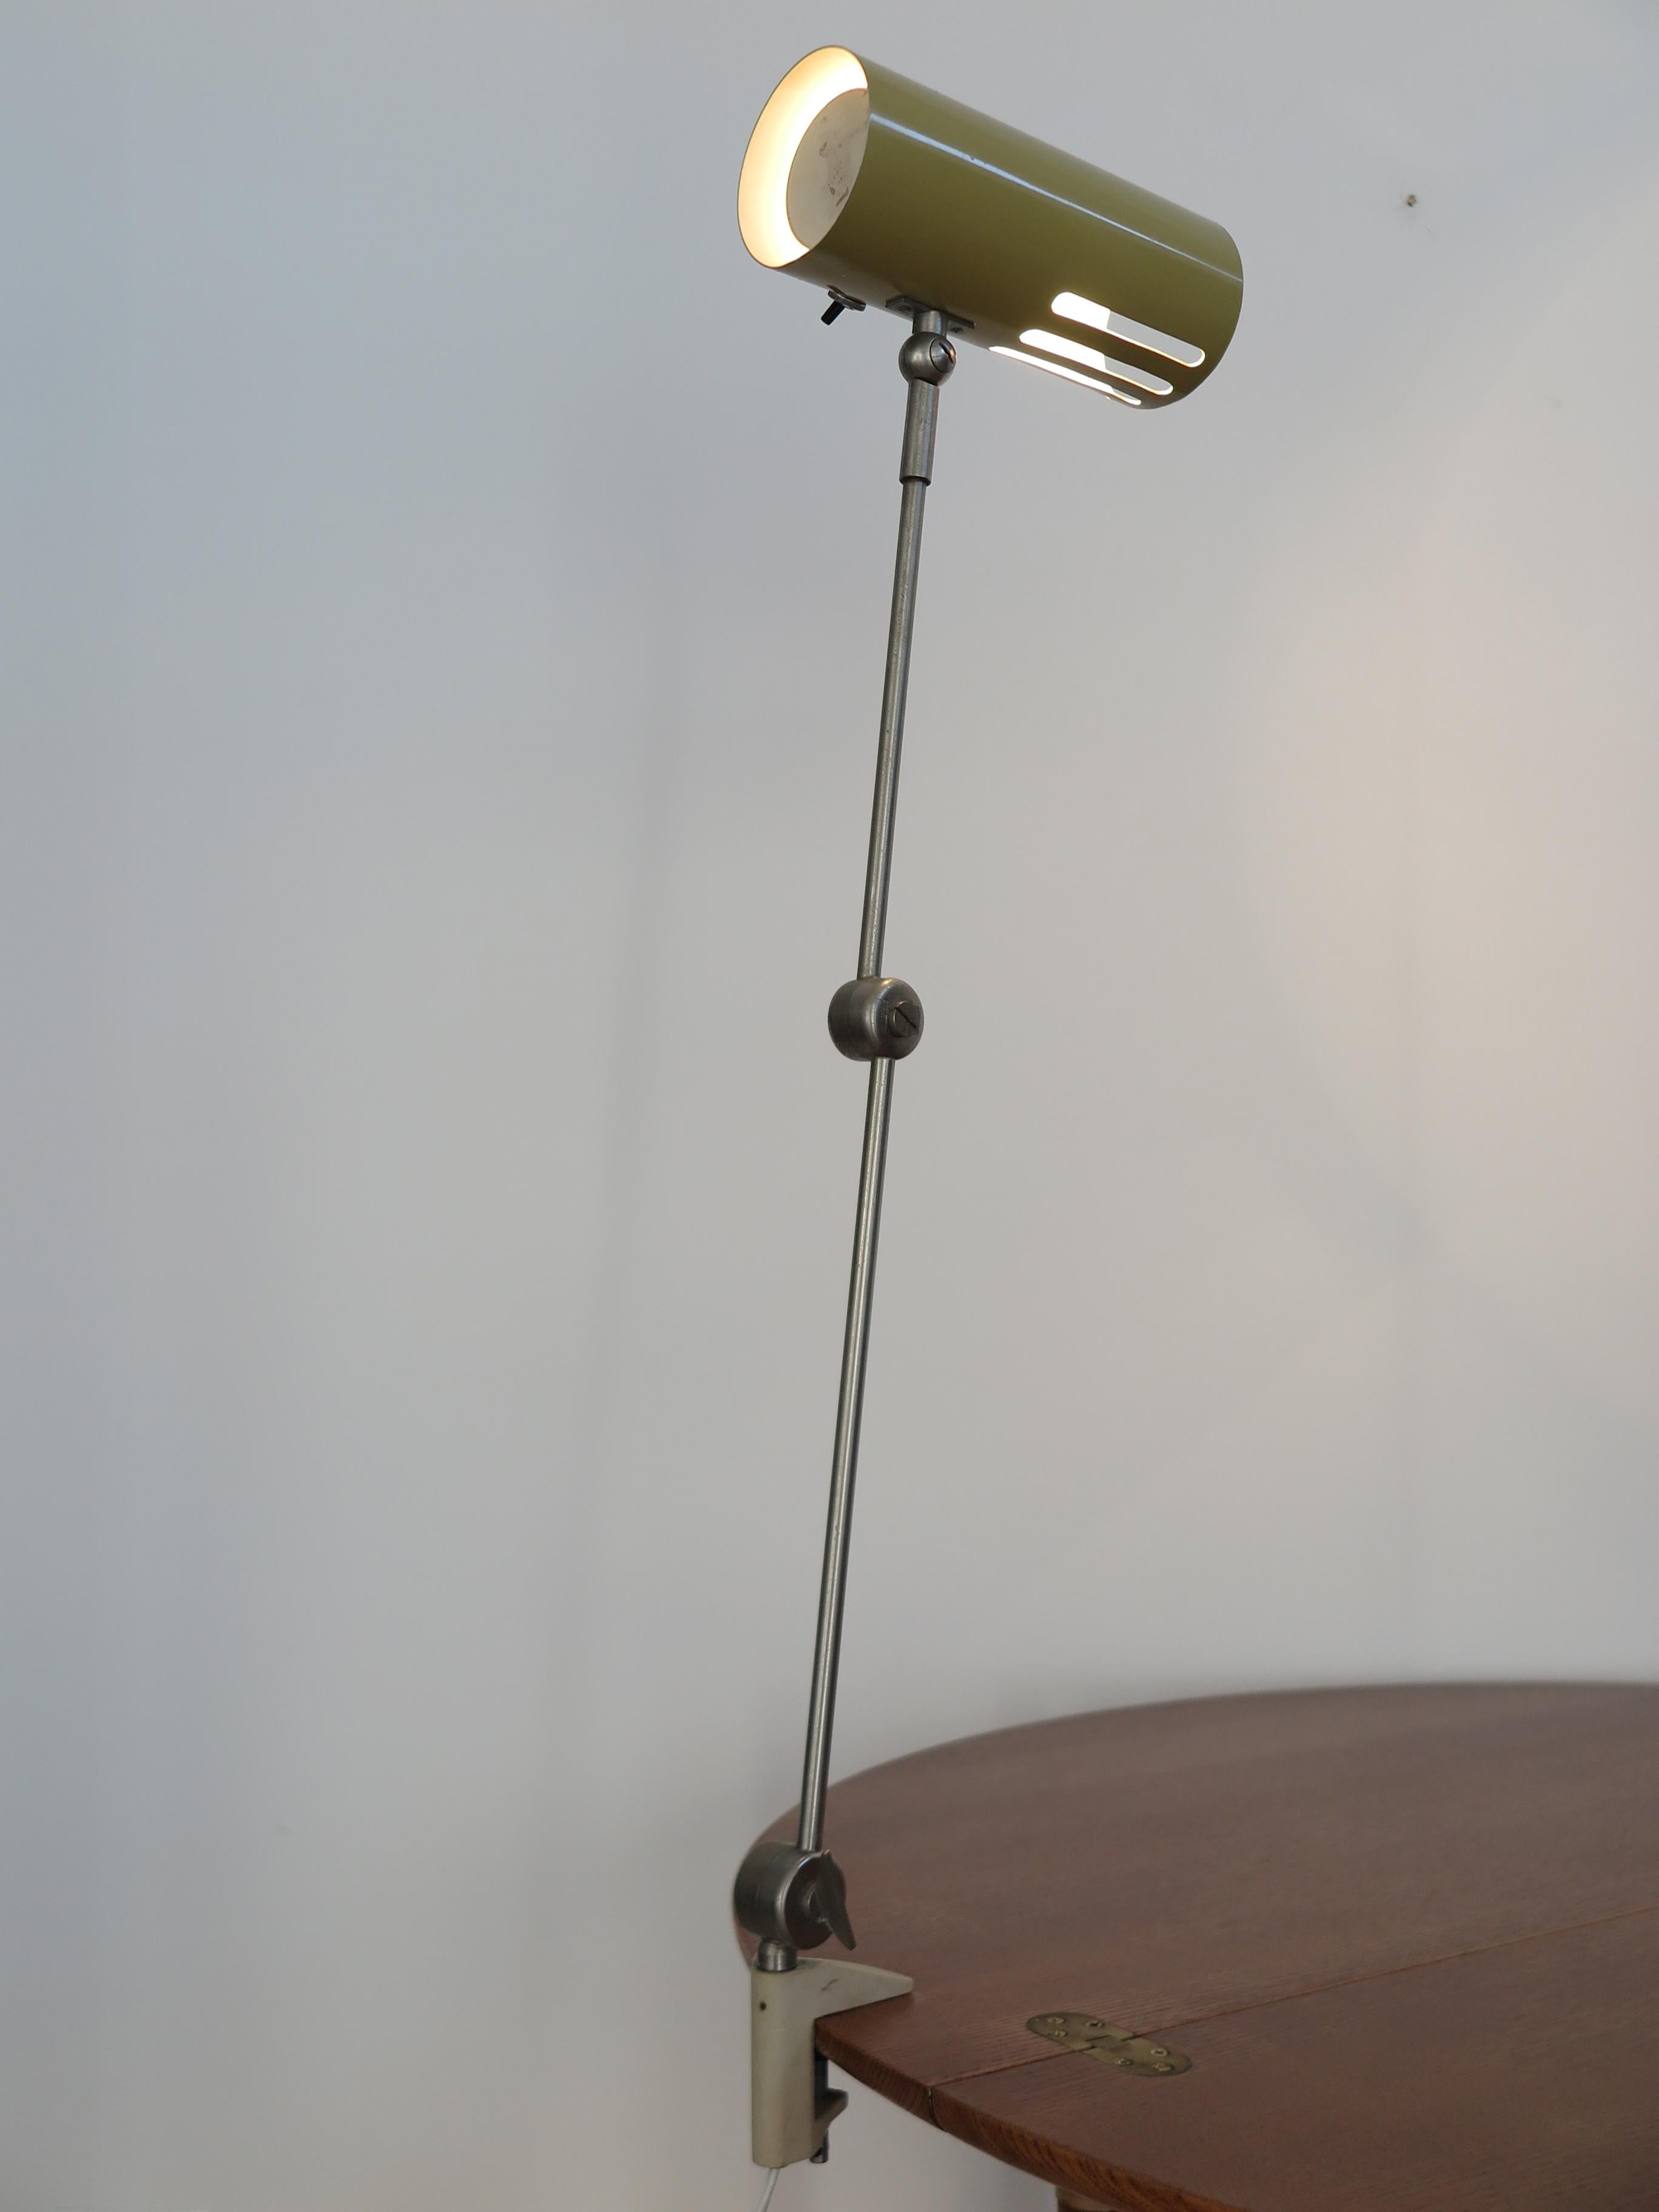 Italian Stilnovo Midcentury Modern Metal Clamp Table Lamp 1950s For Sale 3